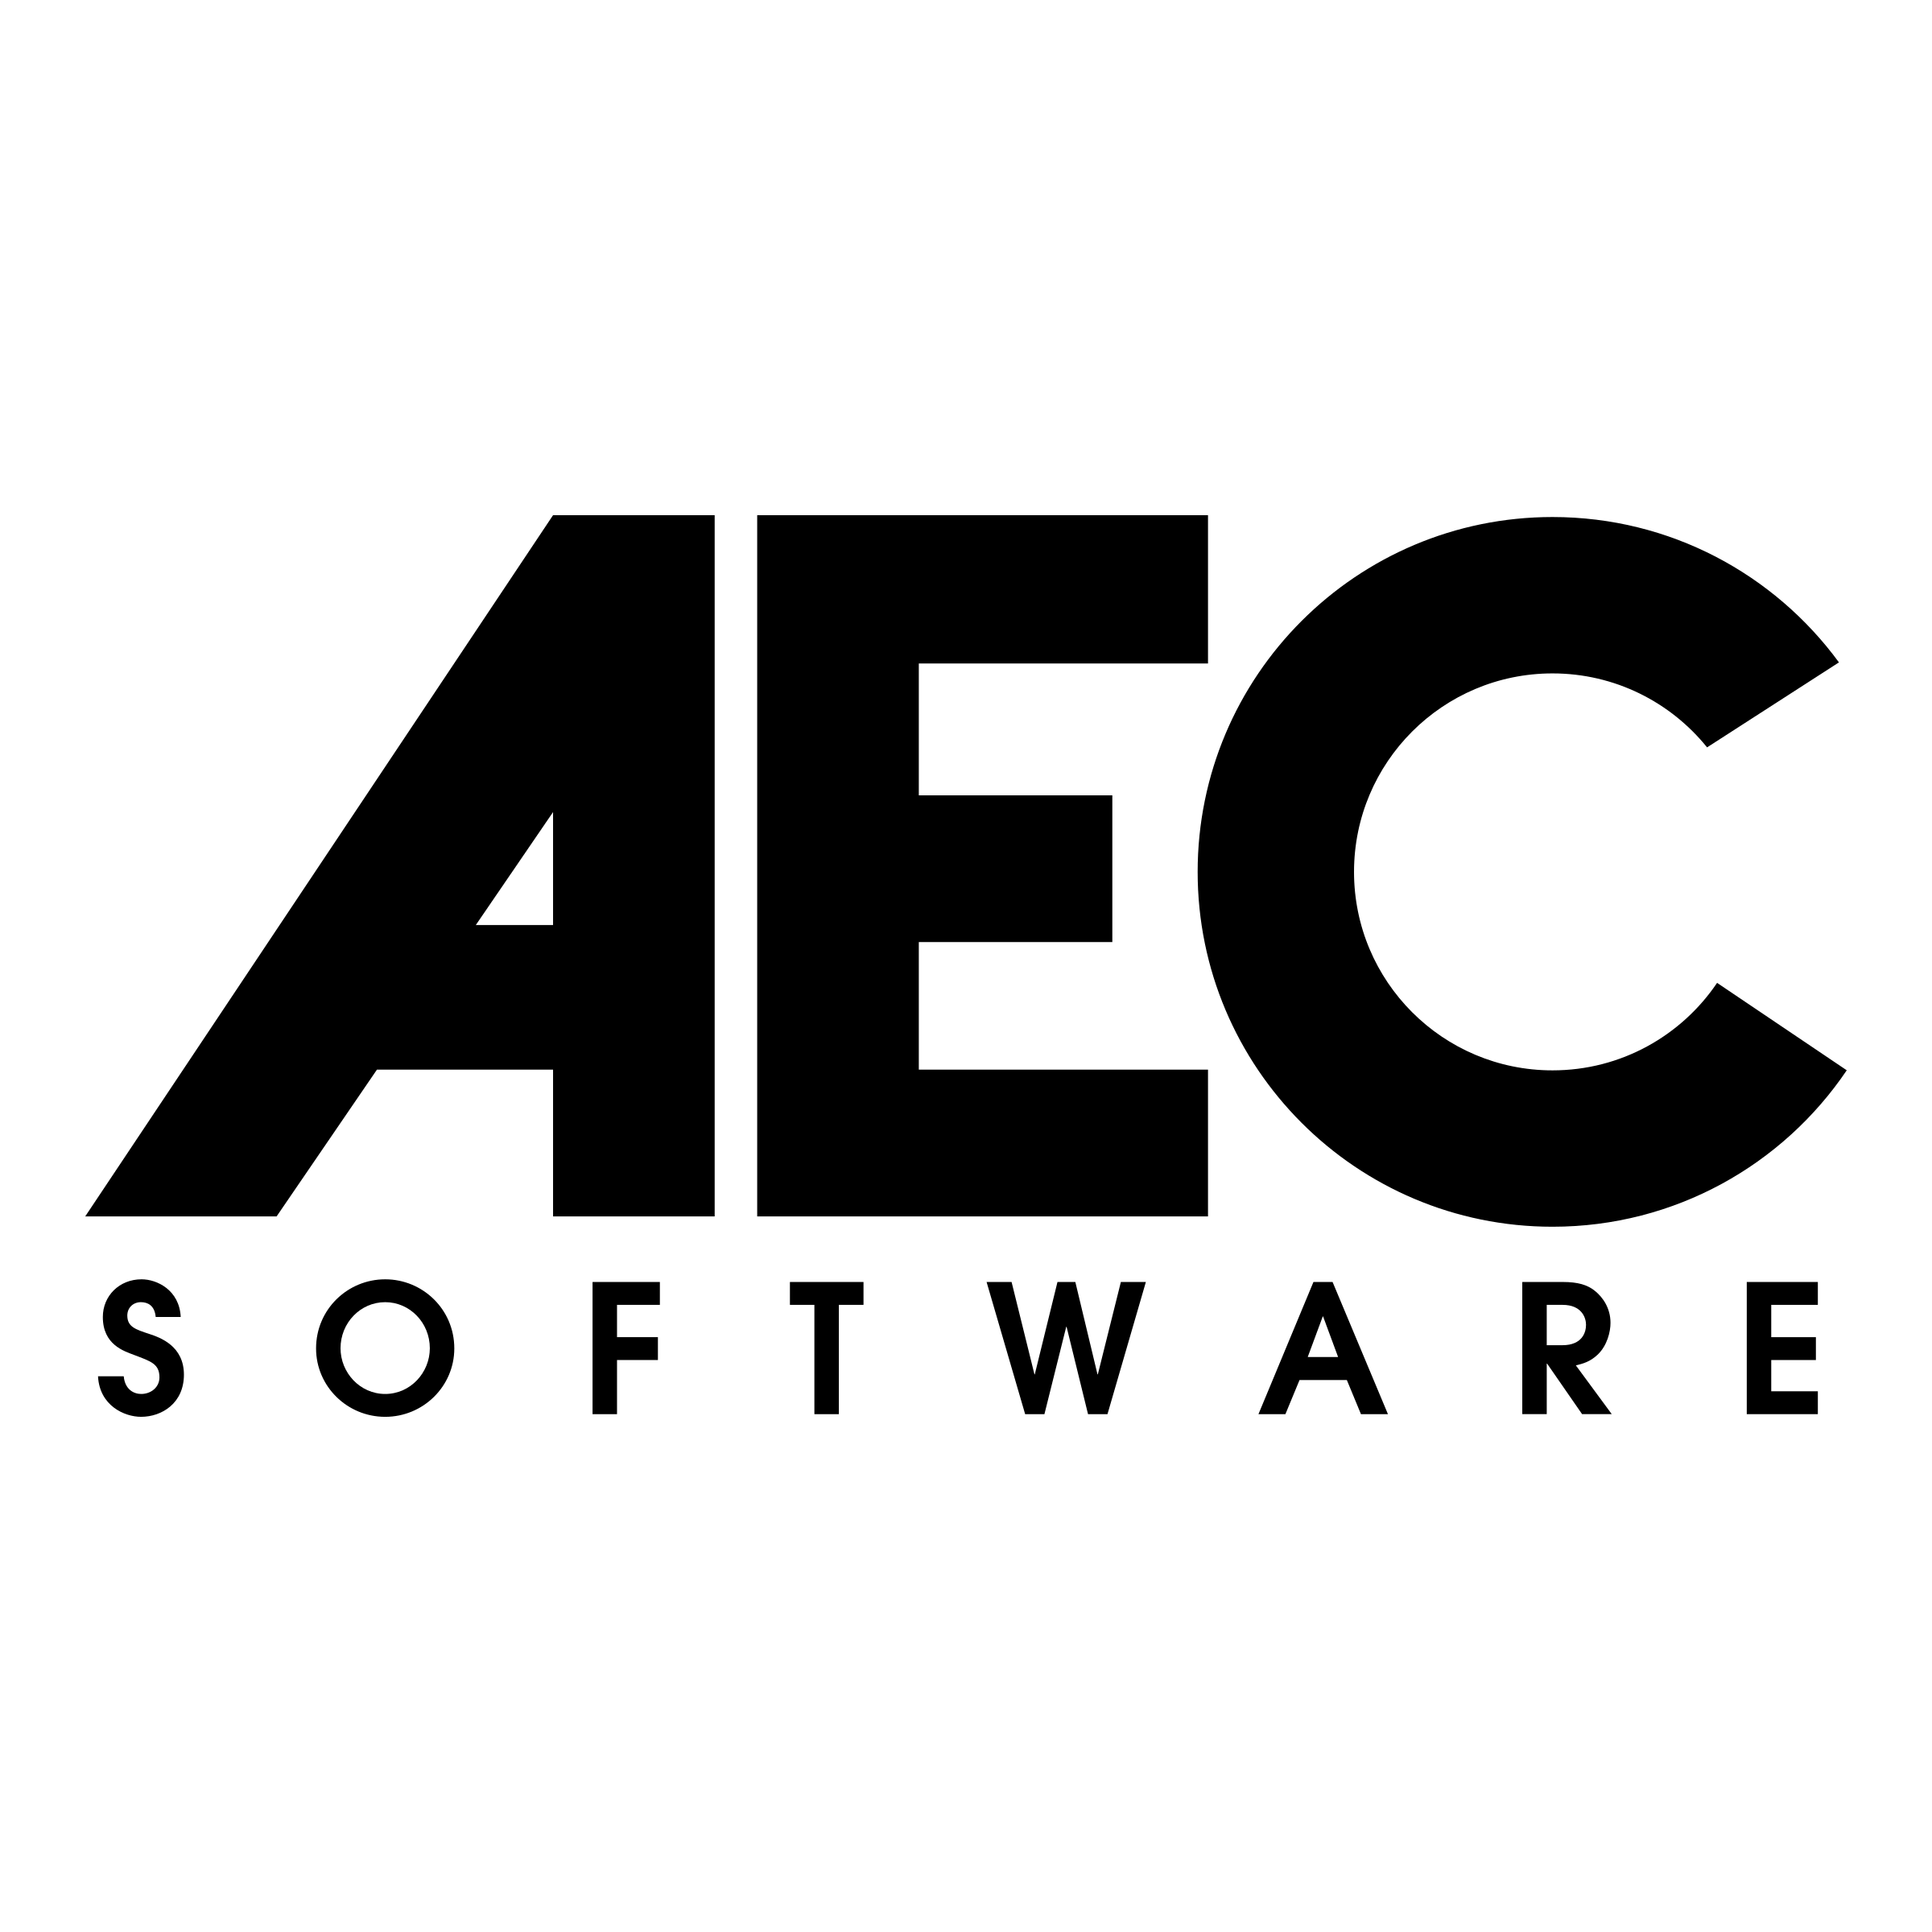 AEC Logo - AEC Software Logo PNG Transparent & SVG Vector - Freebie Supply